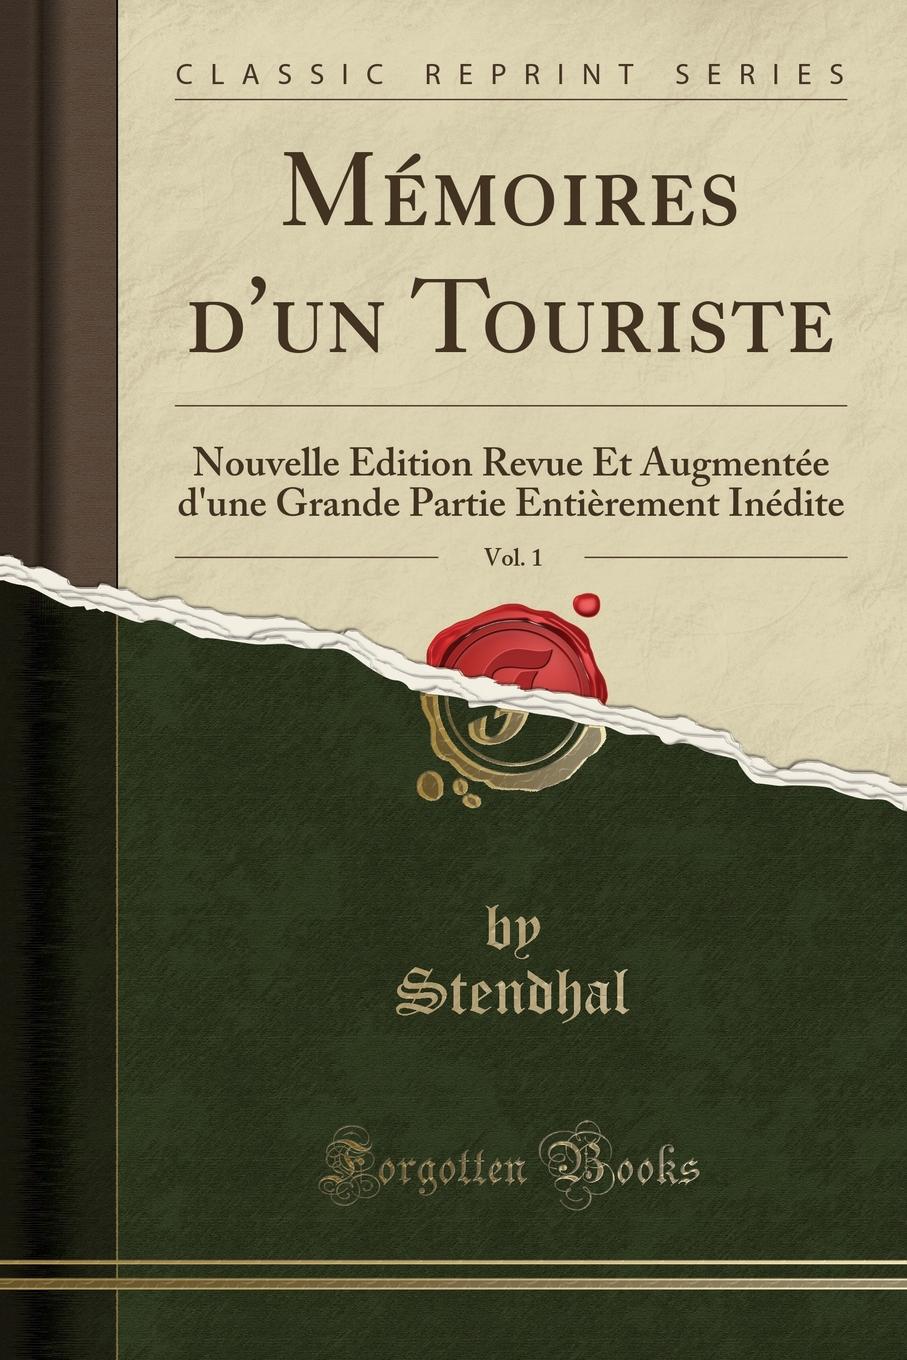 Memoires d.un Touriste, Vol. 1. Nouvelle Edition Revue Et Augmentee d.une Grande Partie Entierement Inedite (Classic Reprint)